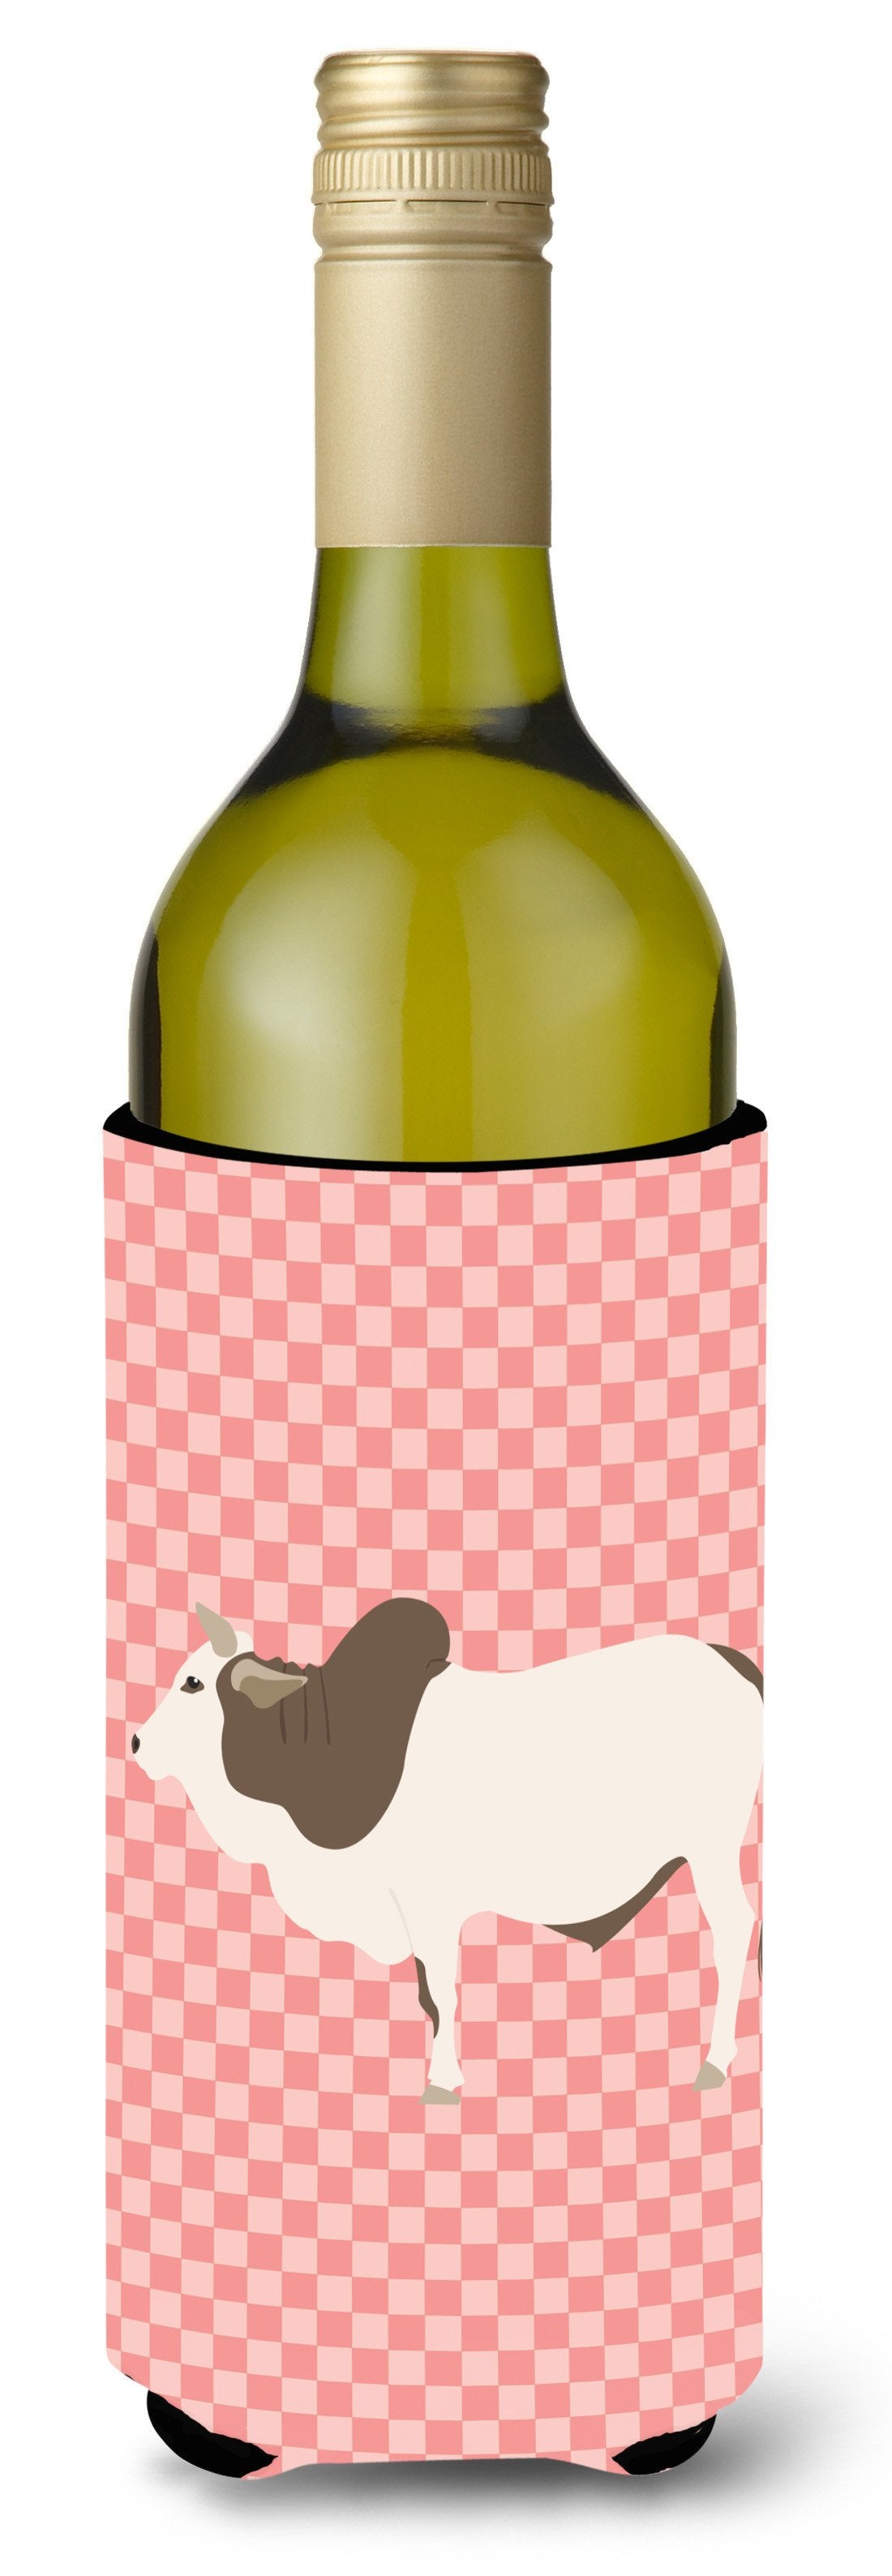 Malvi Cow Pink Check Wine Bottle Beverge Insulator Hugger BB7830LITERK by Caroline's Treasures